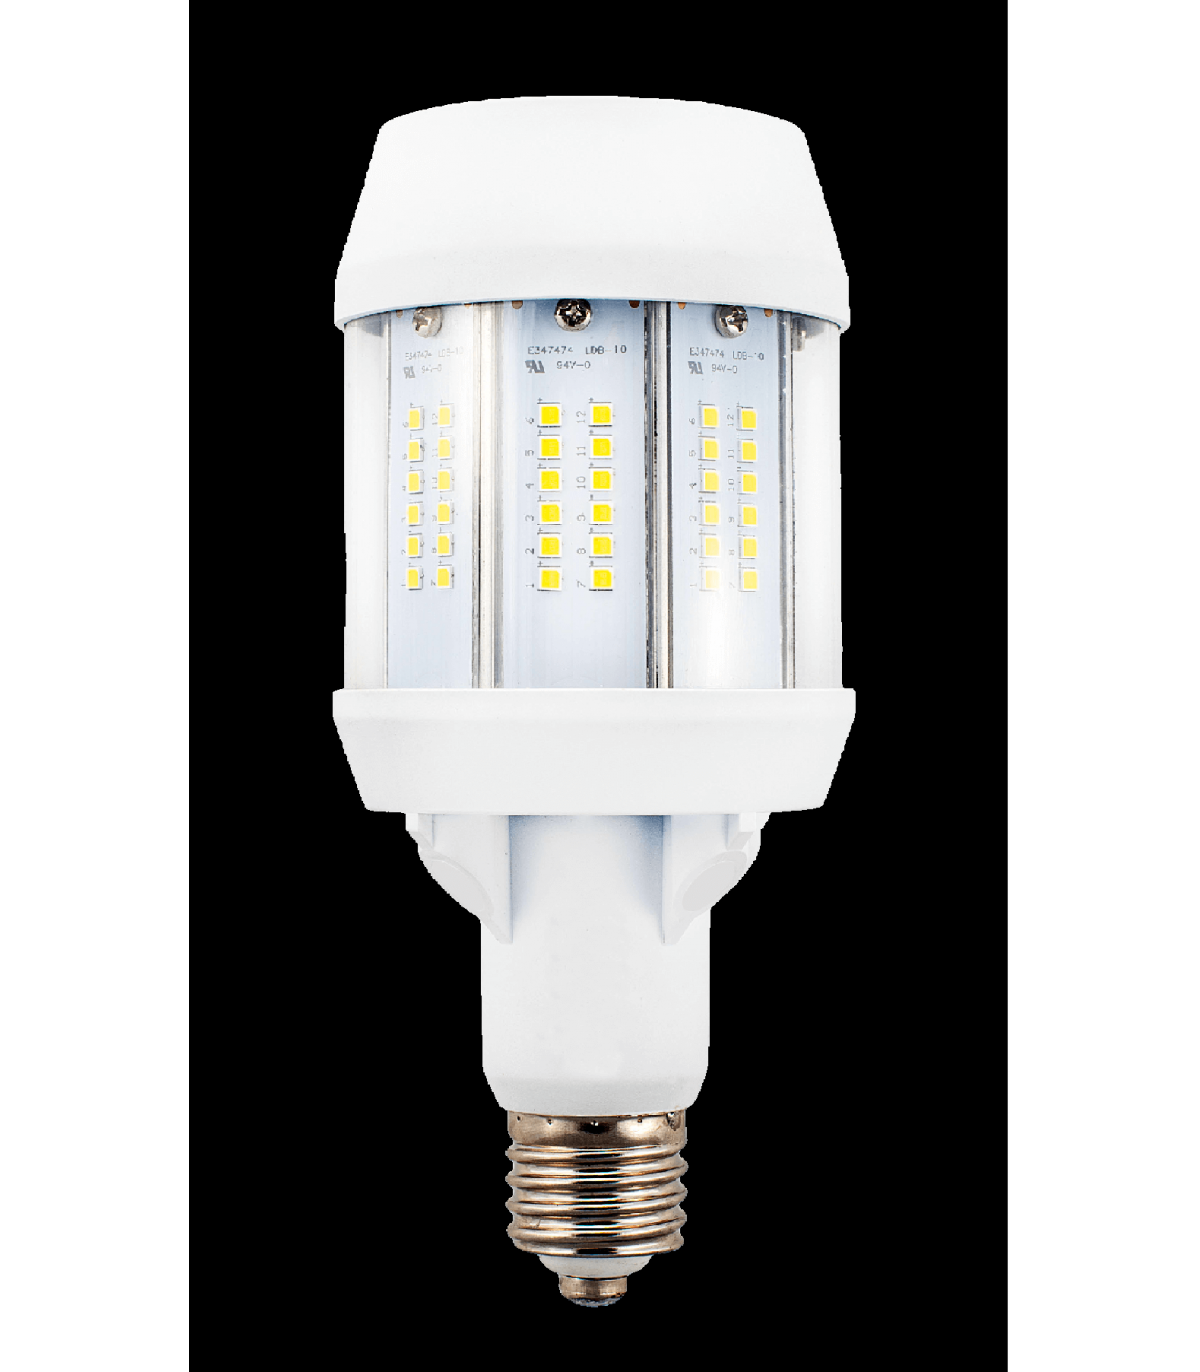 Ampoule LED B22 pas cher dès 2,50€ HT - durée de vie 15000H